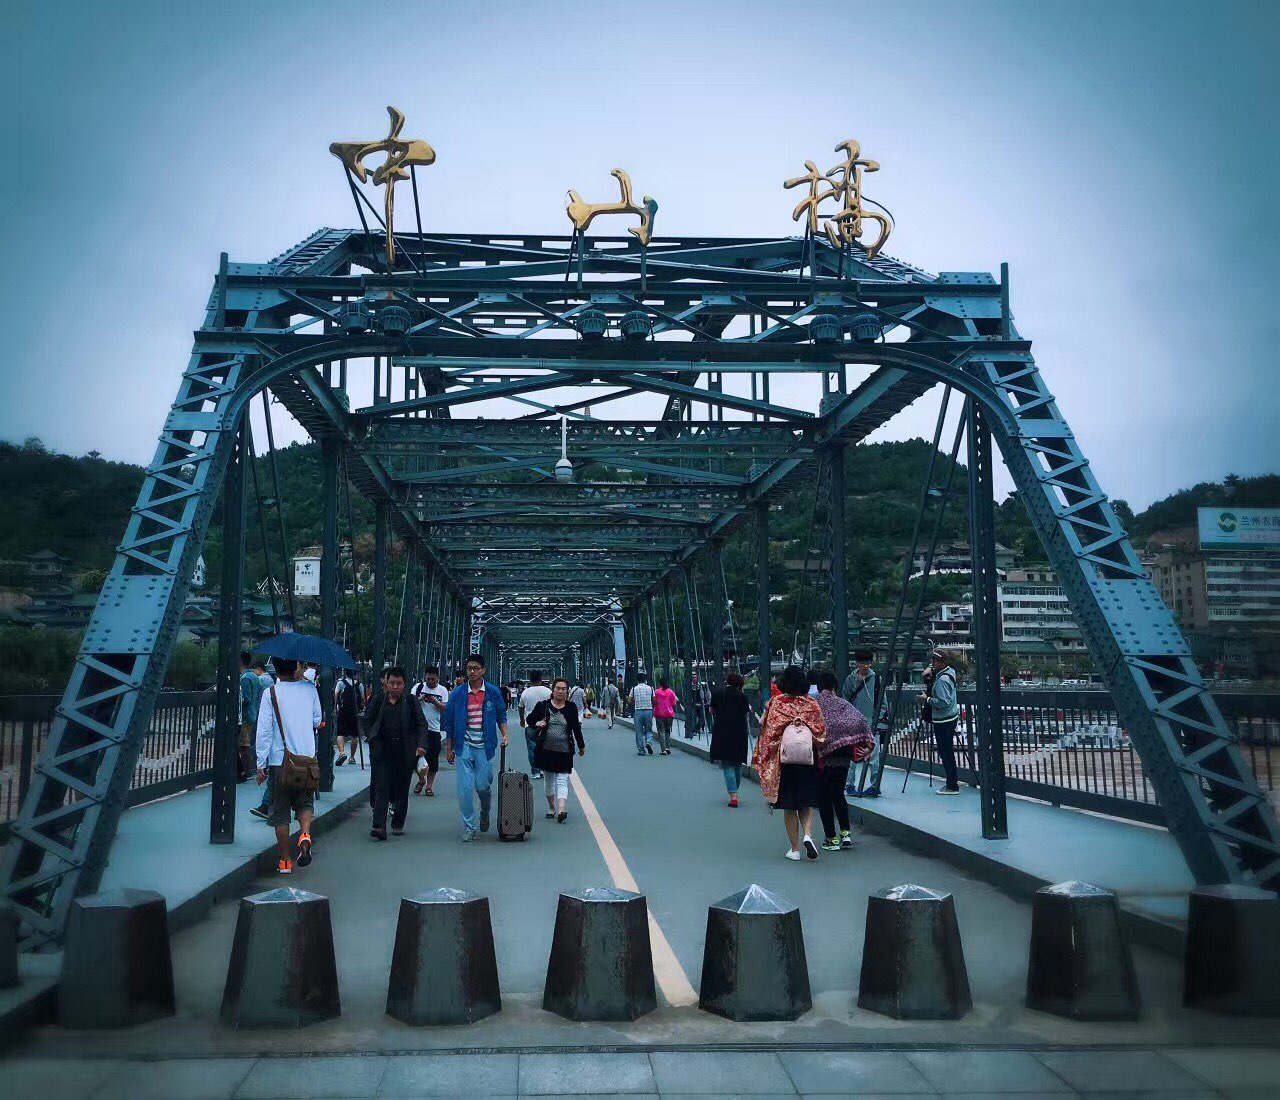 黄河铁桥又名中山桥，位于城关区，是兰州最重要的地标建筑之一。铁桥南侧桥